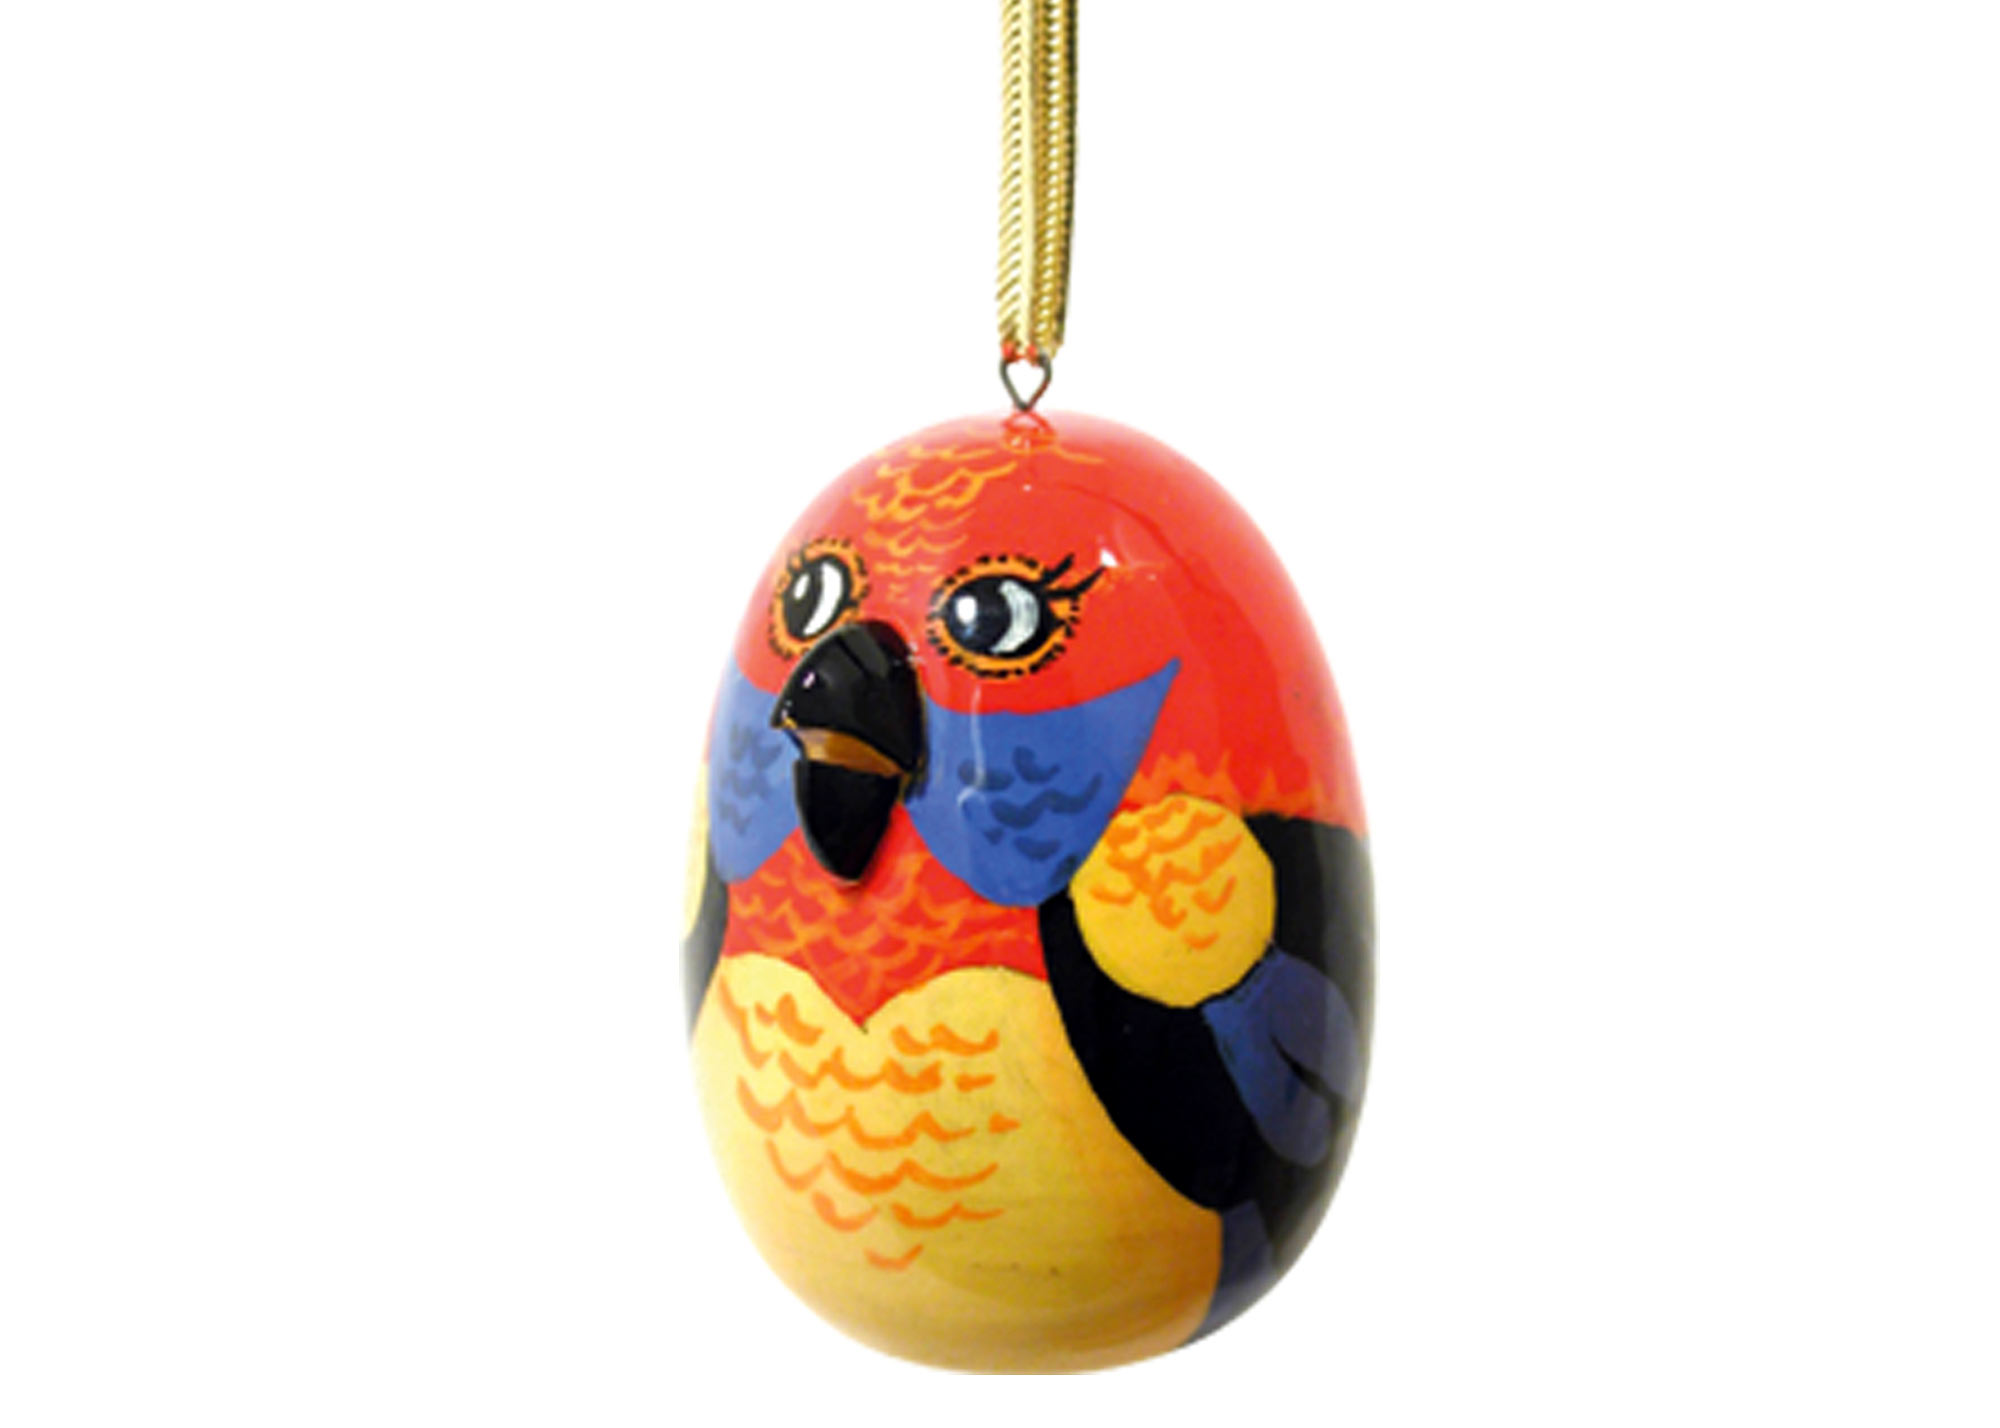 Buy Елочное украшение "Попугай" 5 см at GoldenCockerel.com